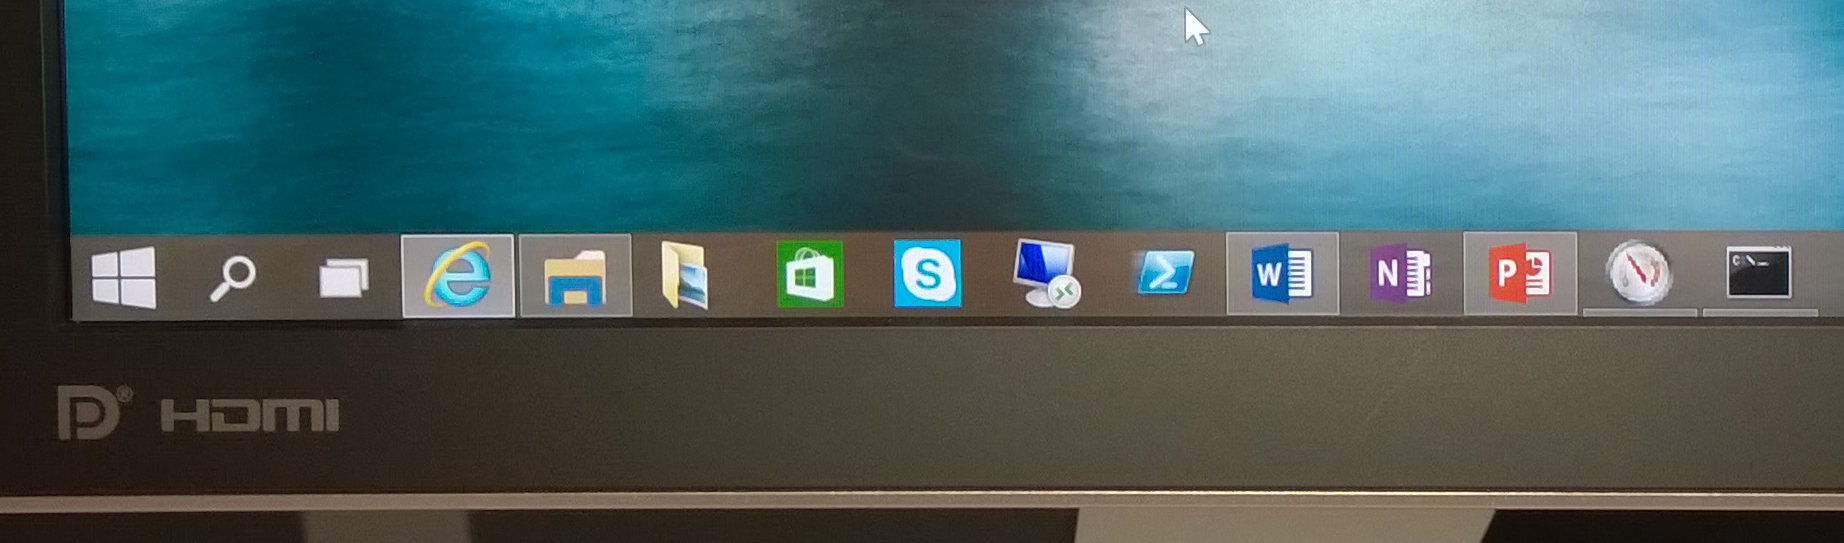 Microsoft Windows Taskbar